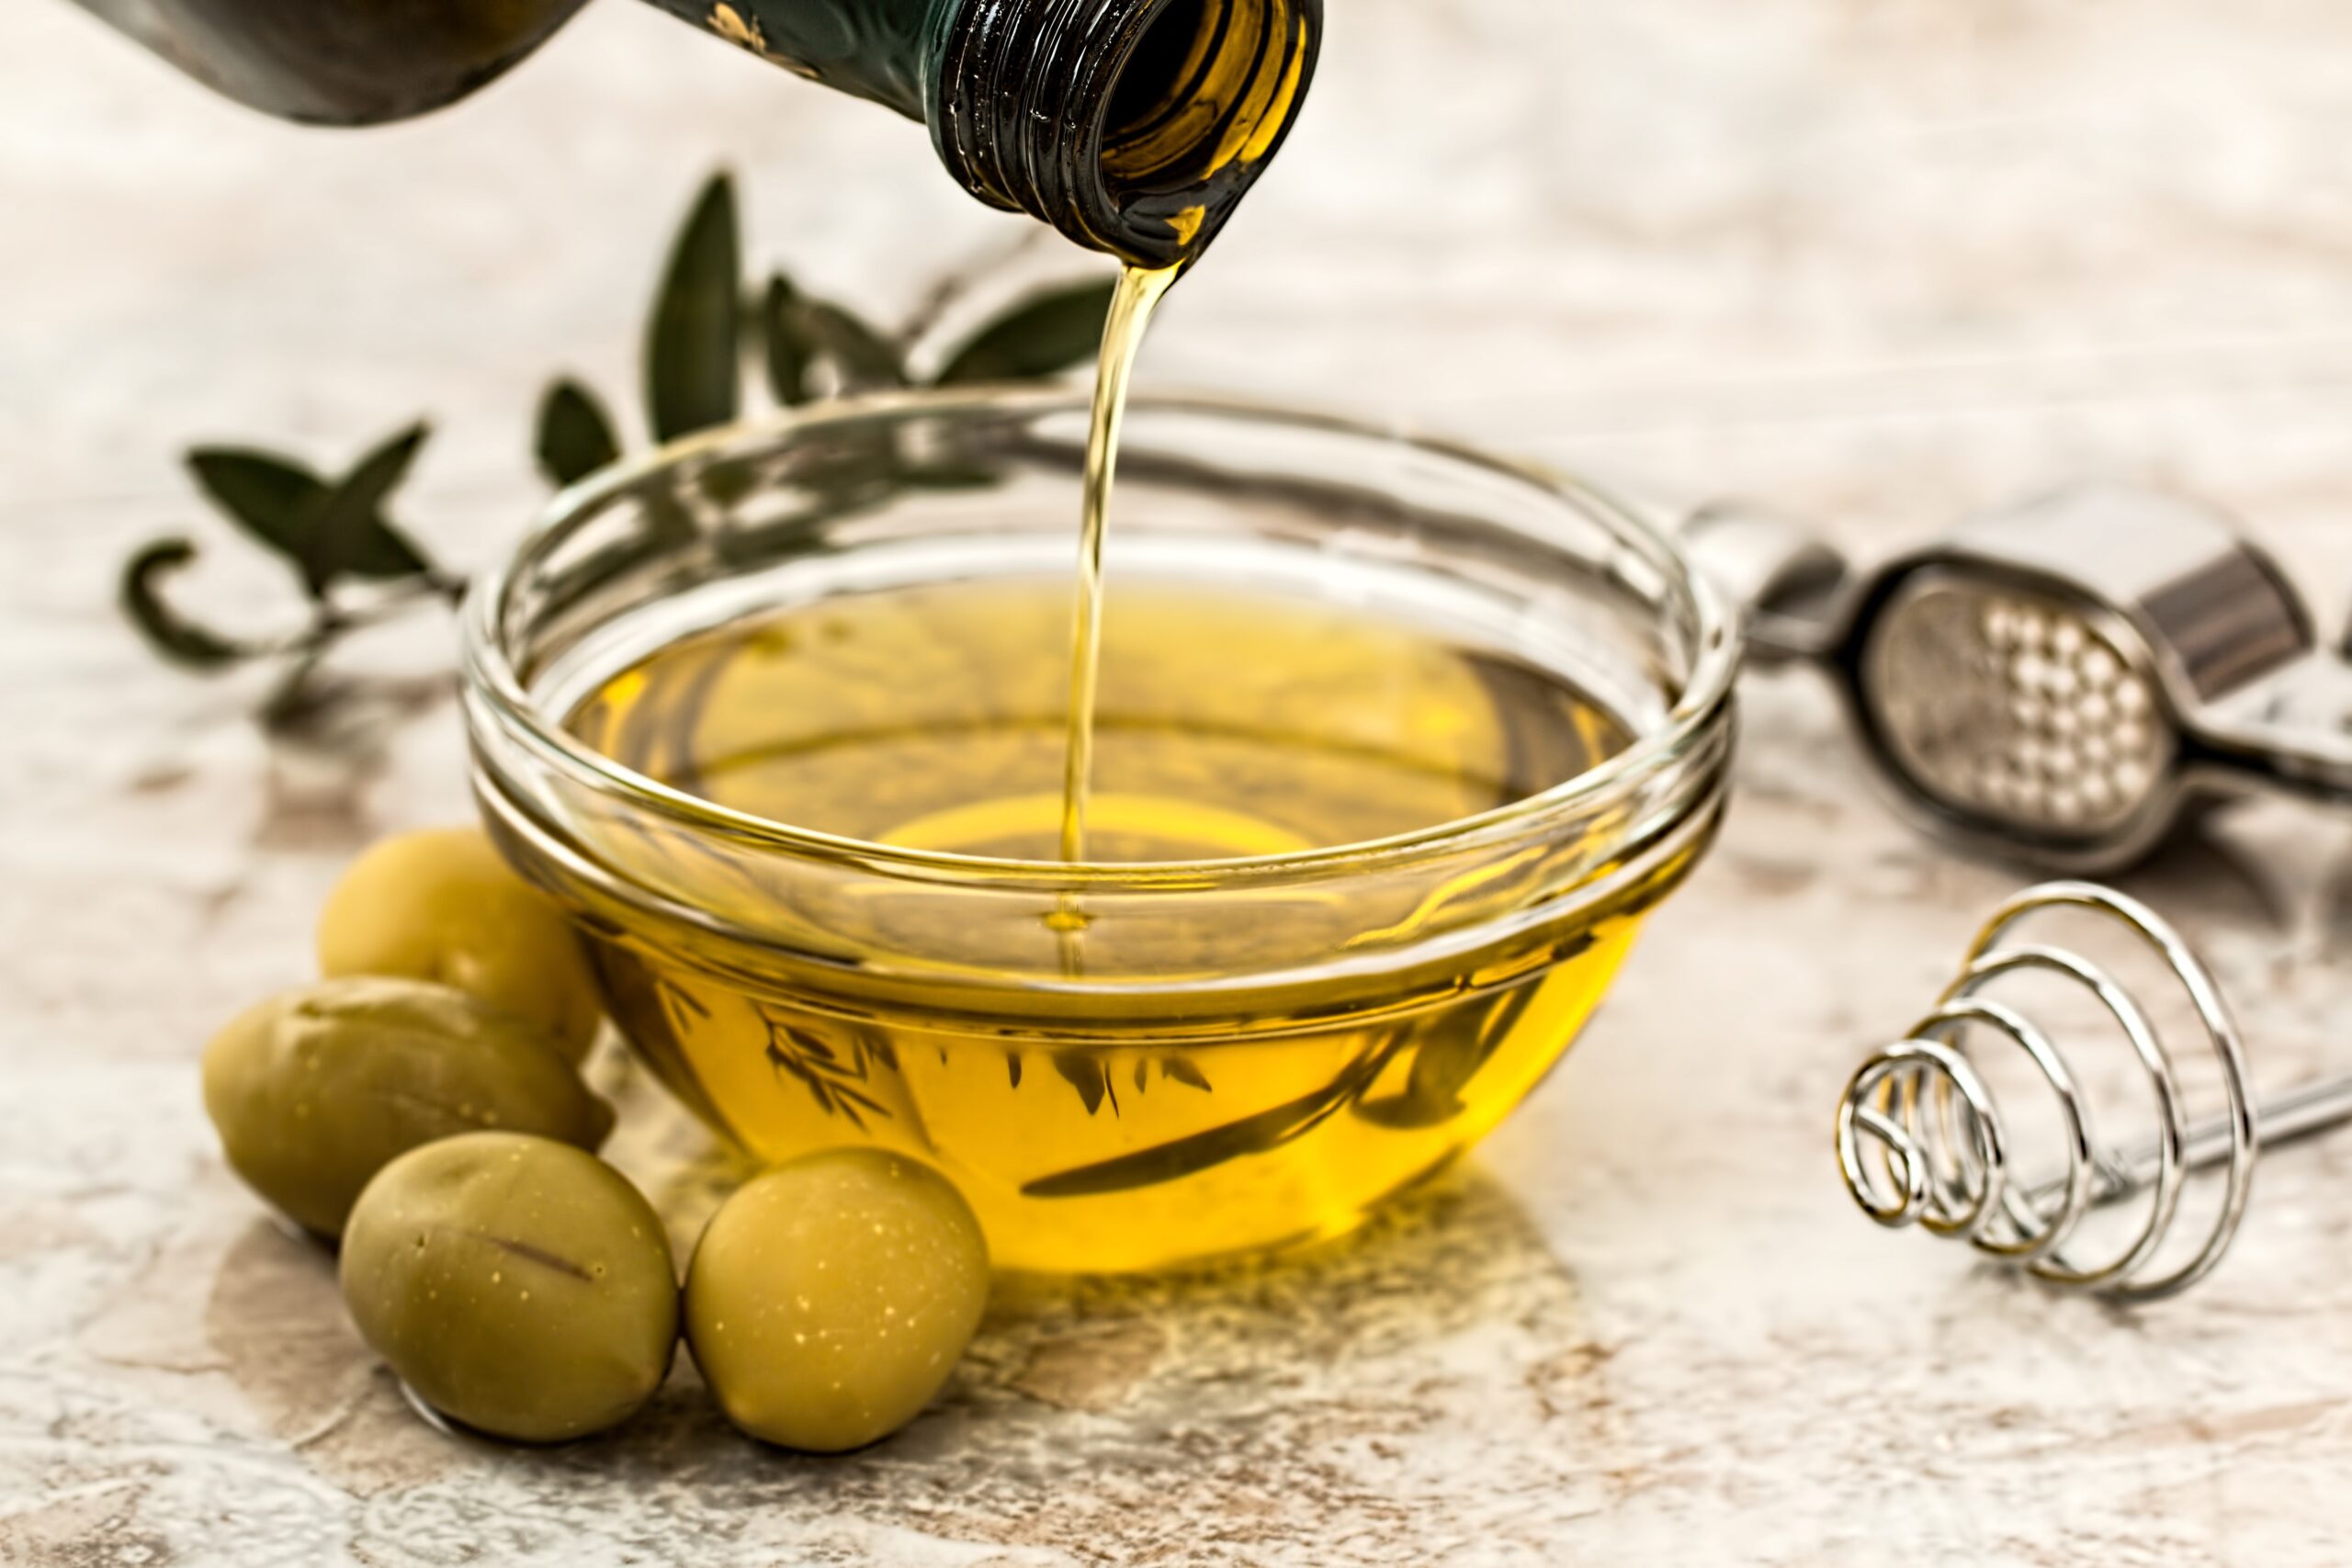 Un nuevo aceite de oliva...directamente bendito